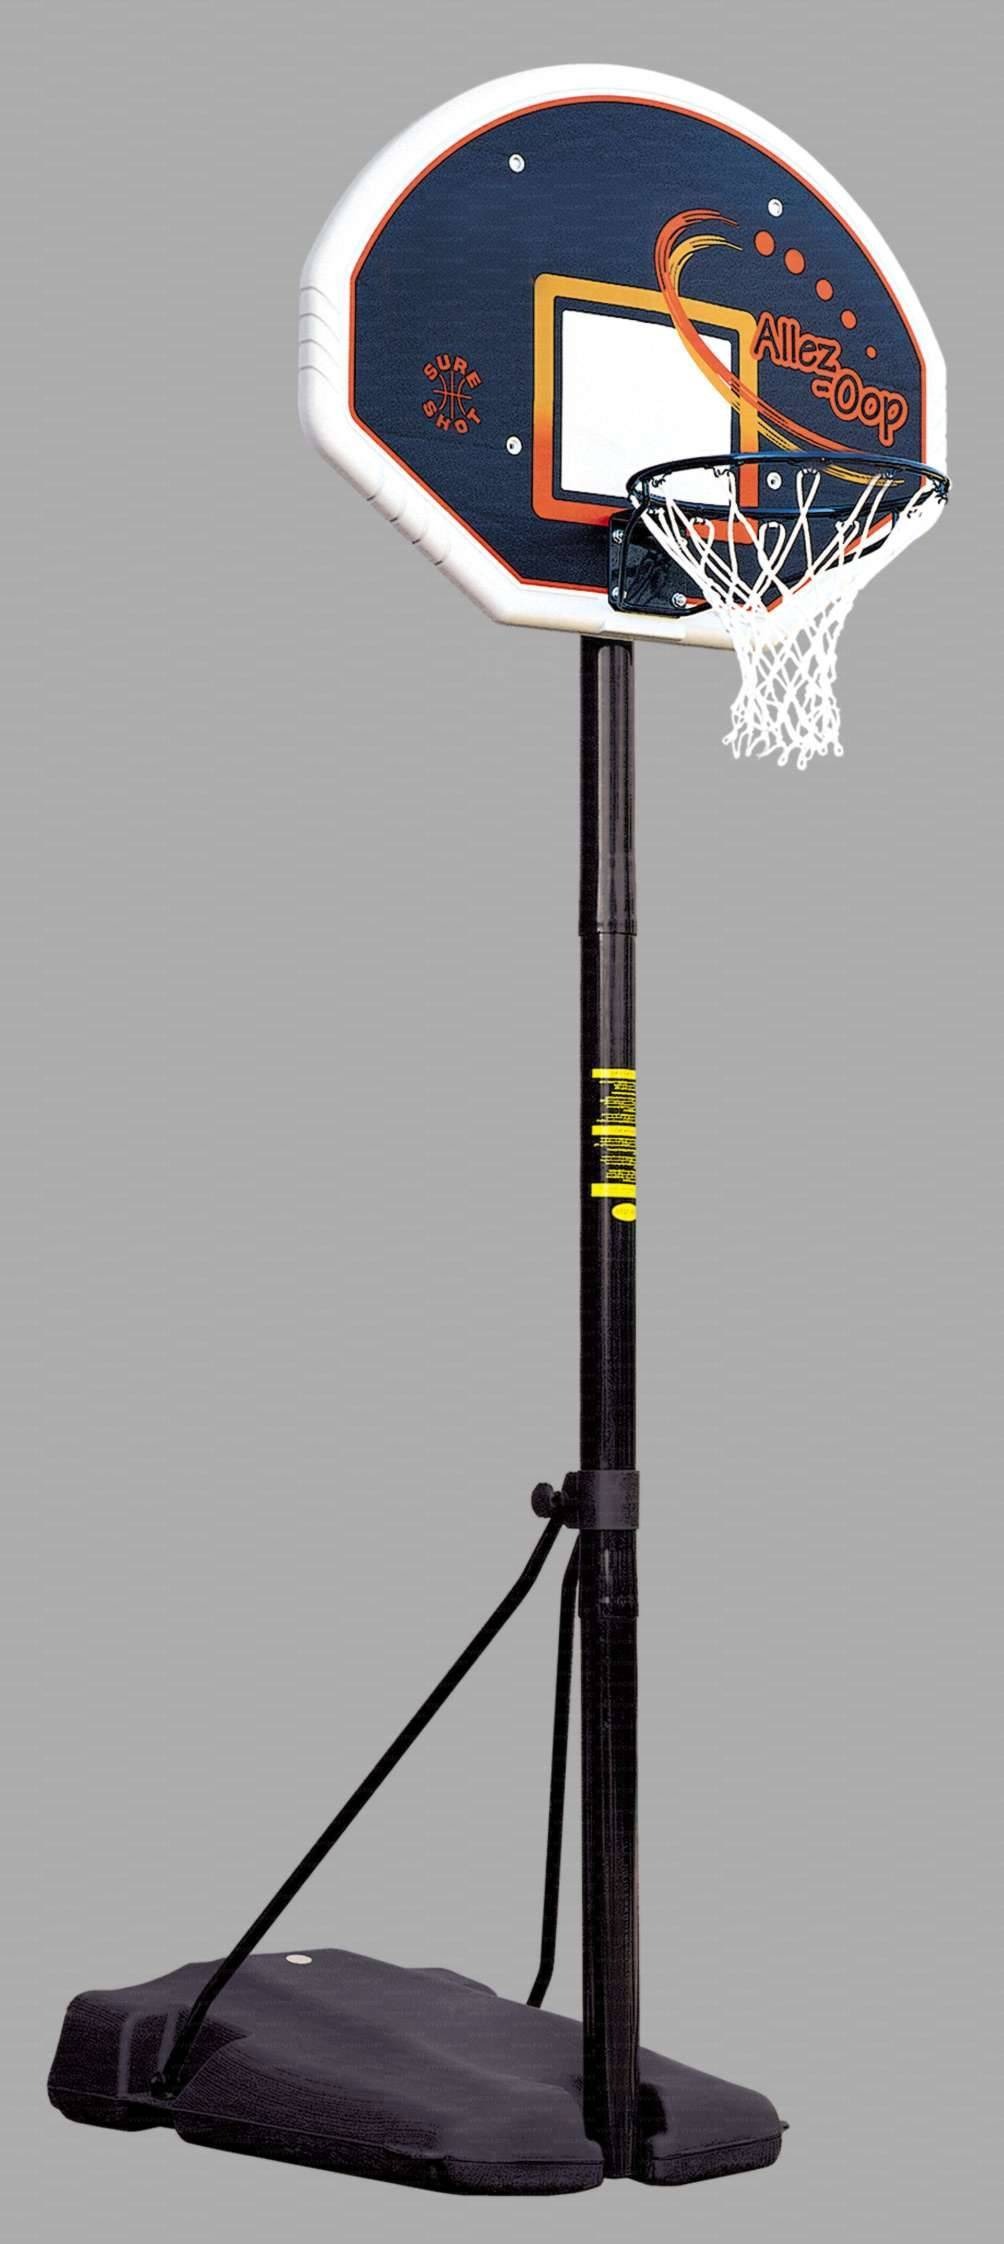 Mezzo impianto minibasket a norme UNI-EN 1270, con zavorra riempibile altezza reg. da 120 a 261 cm. manualmente mod. Boston